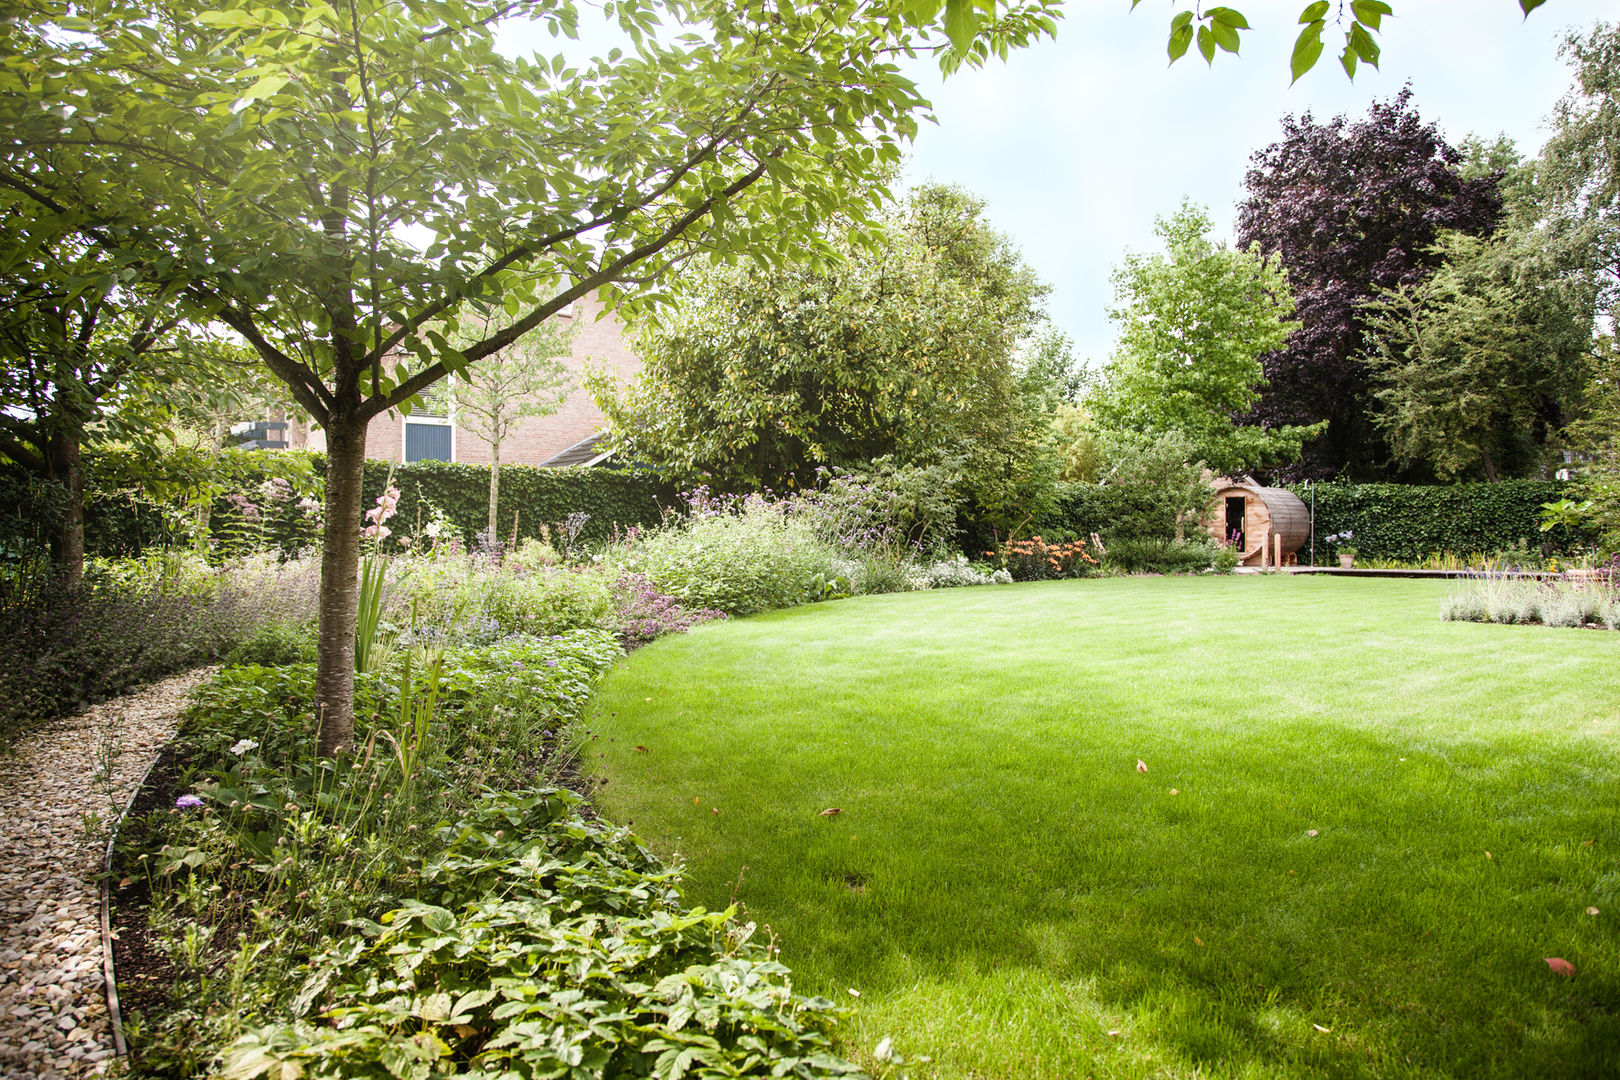 Wellness tuin verbonden met het landschap, Studio REDD exclusieve tuinen Studio REDD exclusieve tuinen Country style gardens